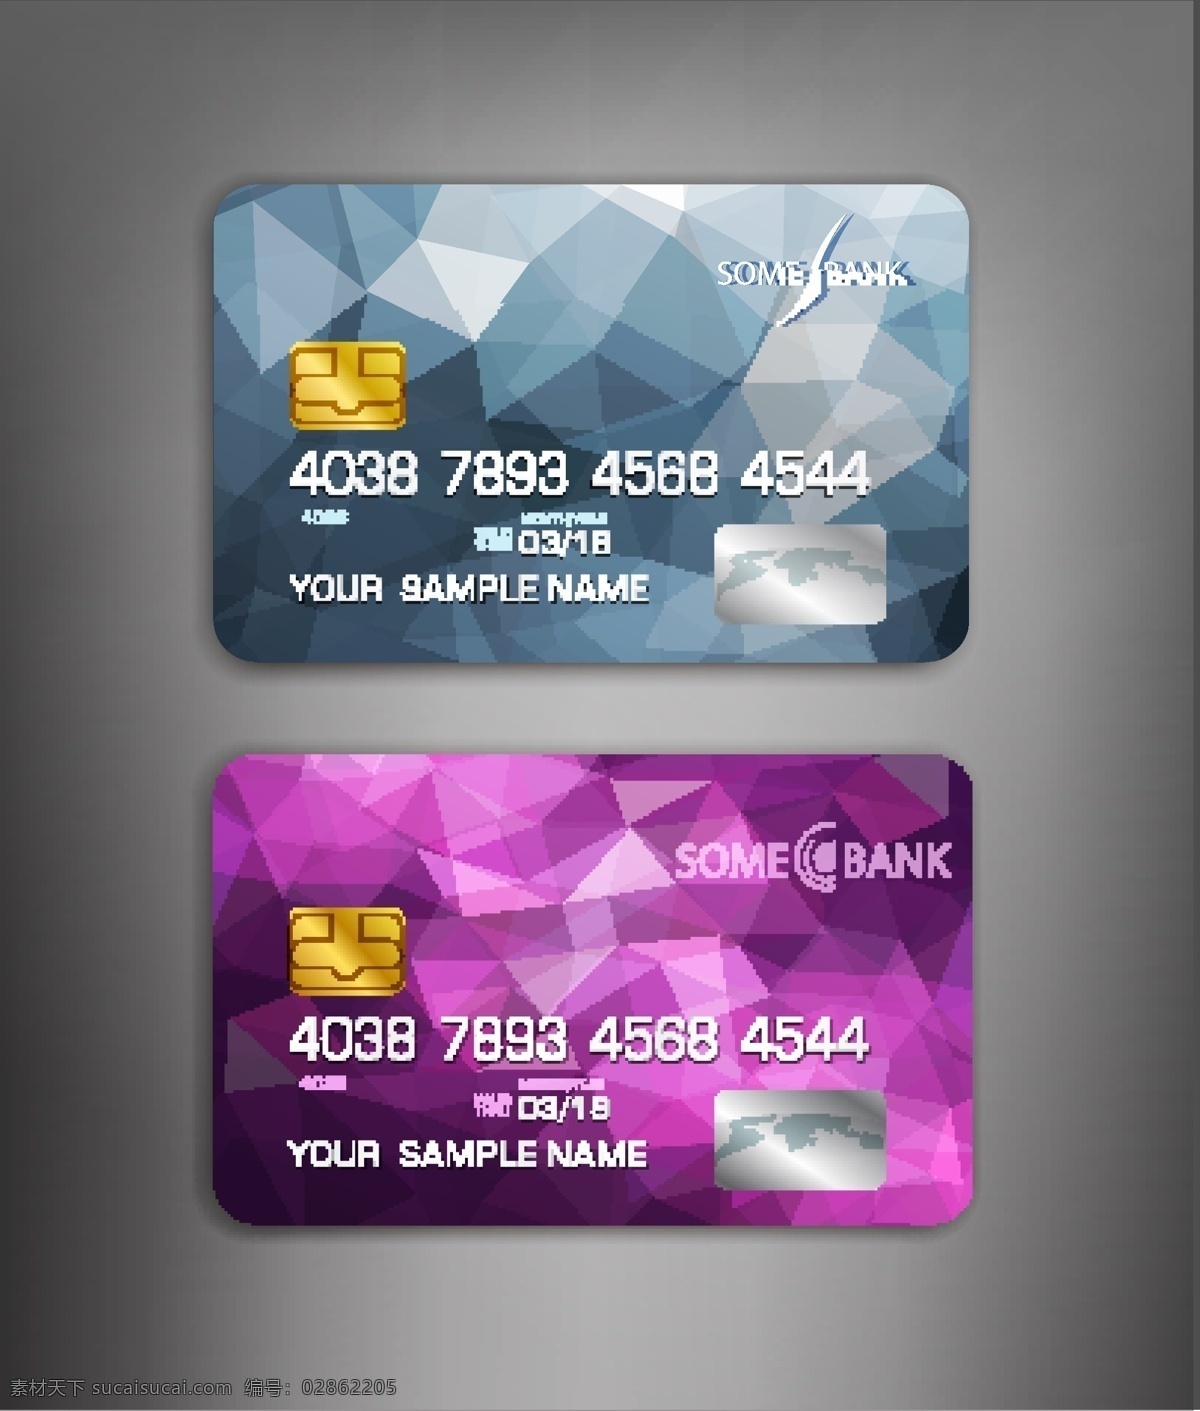 银行卡设计图 矢量图 彩色 灰色